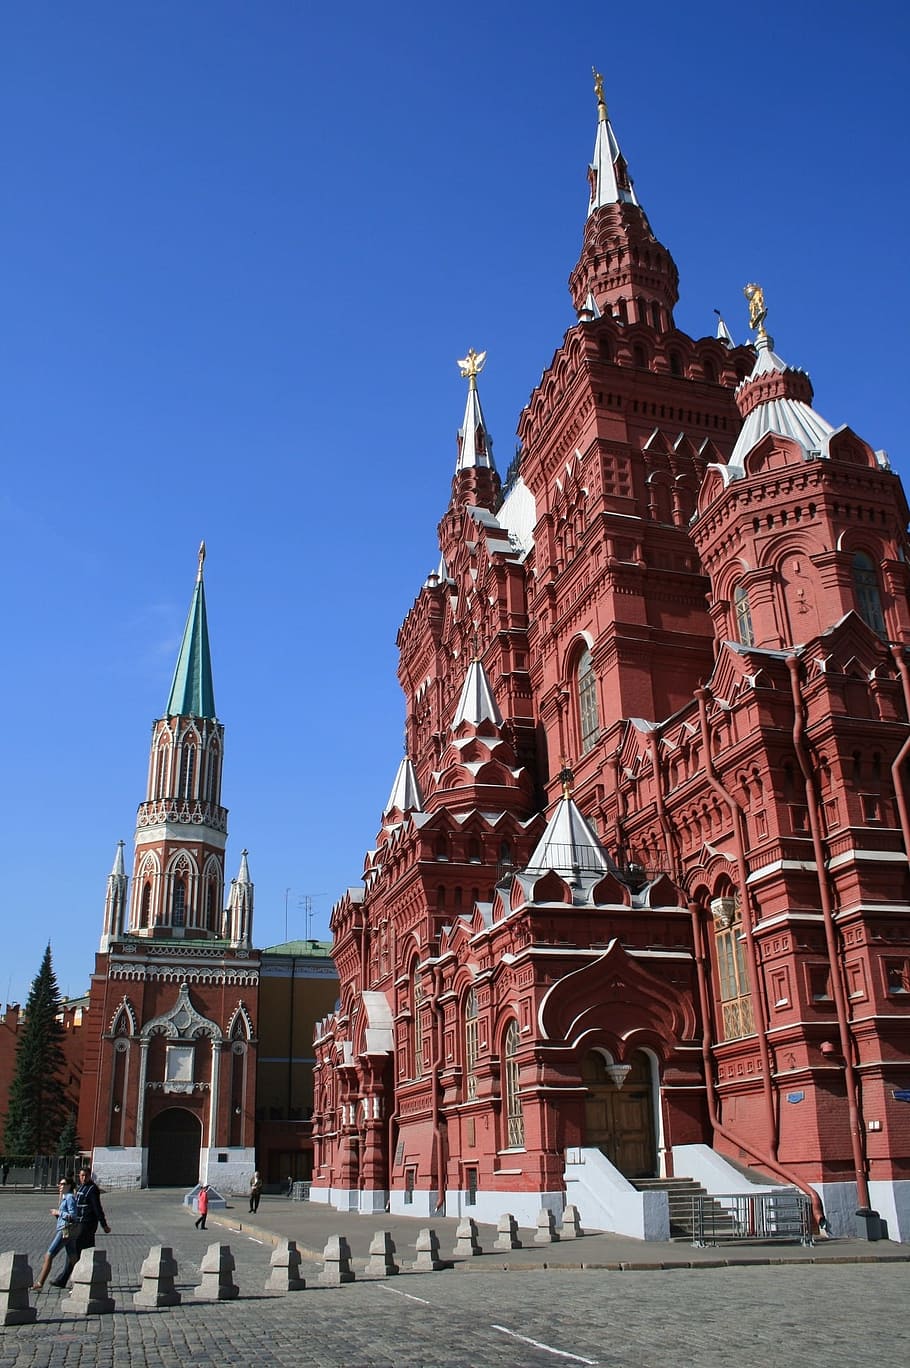 museo de historia del estado, edificio de ladrillo rojo, techos plateados, pavimento cuadrado rojo, trozos de guía de tráfico, arquitectura, cielo azul despejado, edificio intrincadamente decorado, muro del kremlin, kremlin